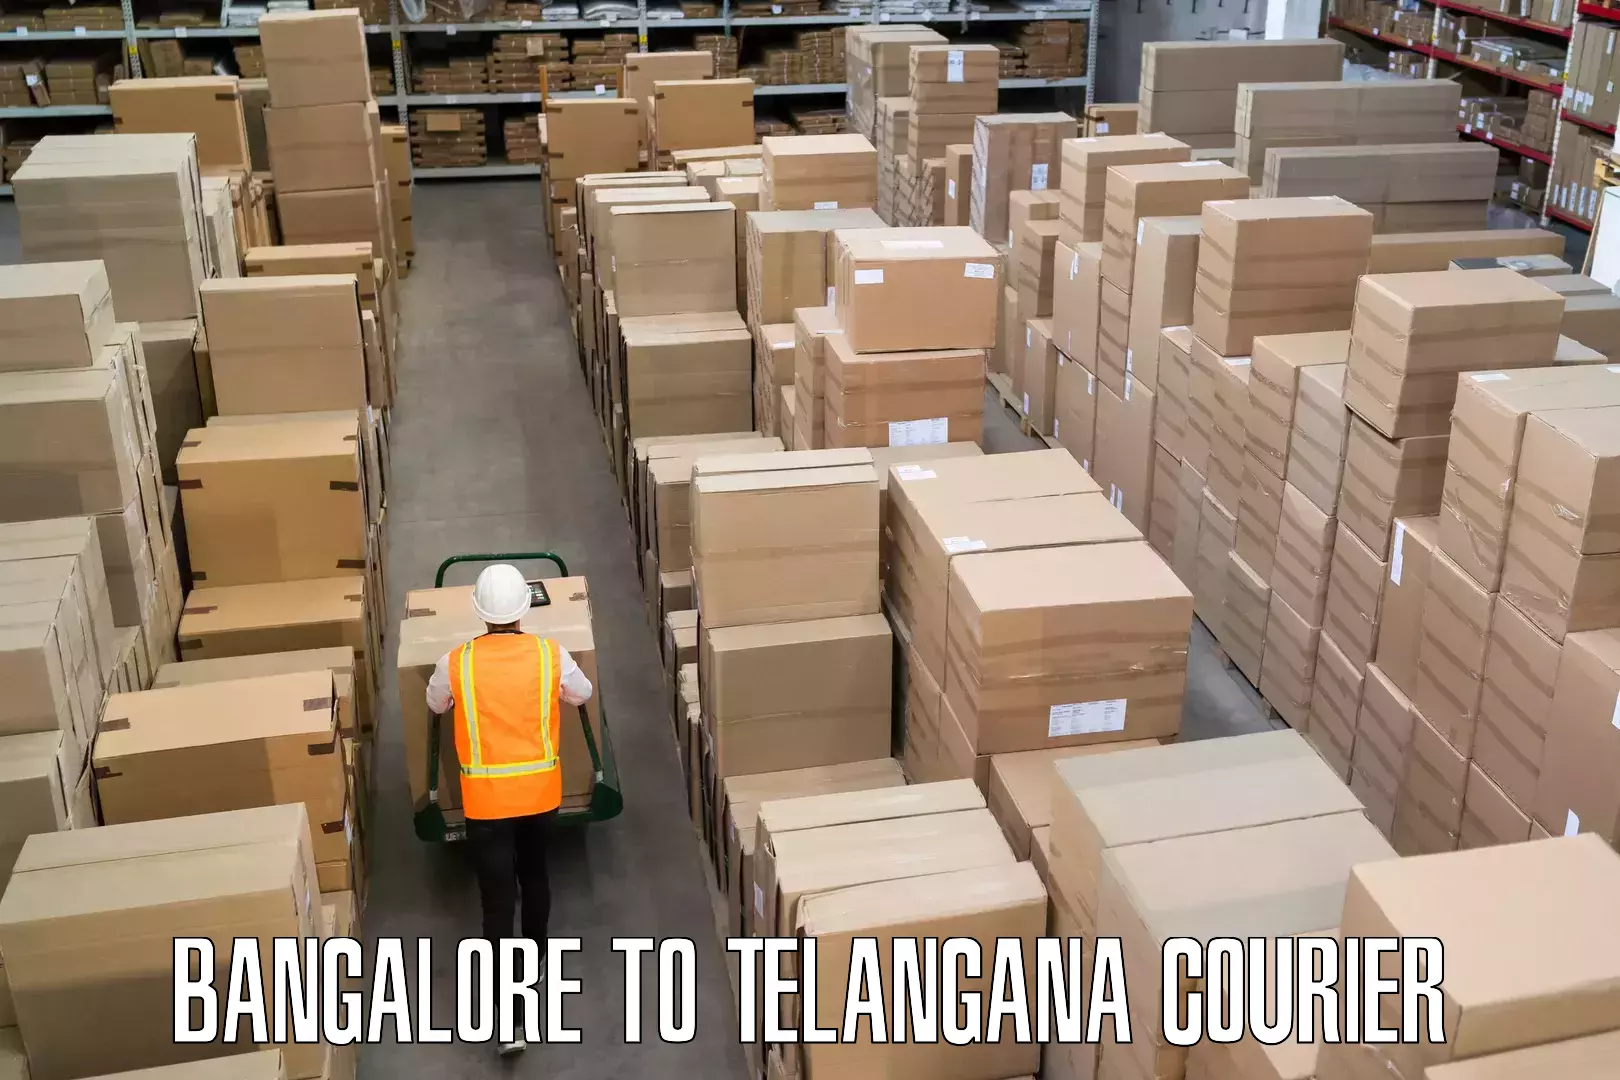 Luggage shipment specialists Bangalore to Telangana